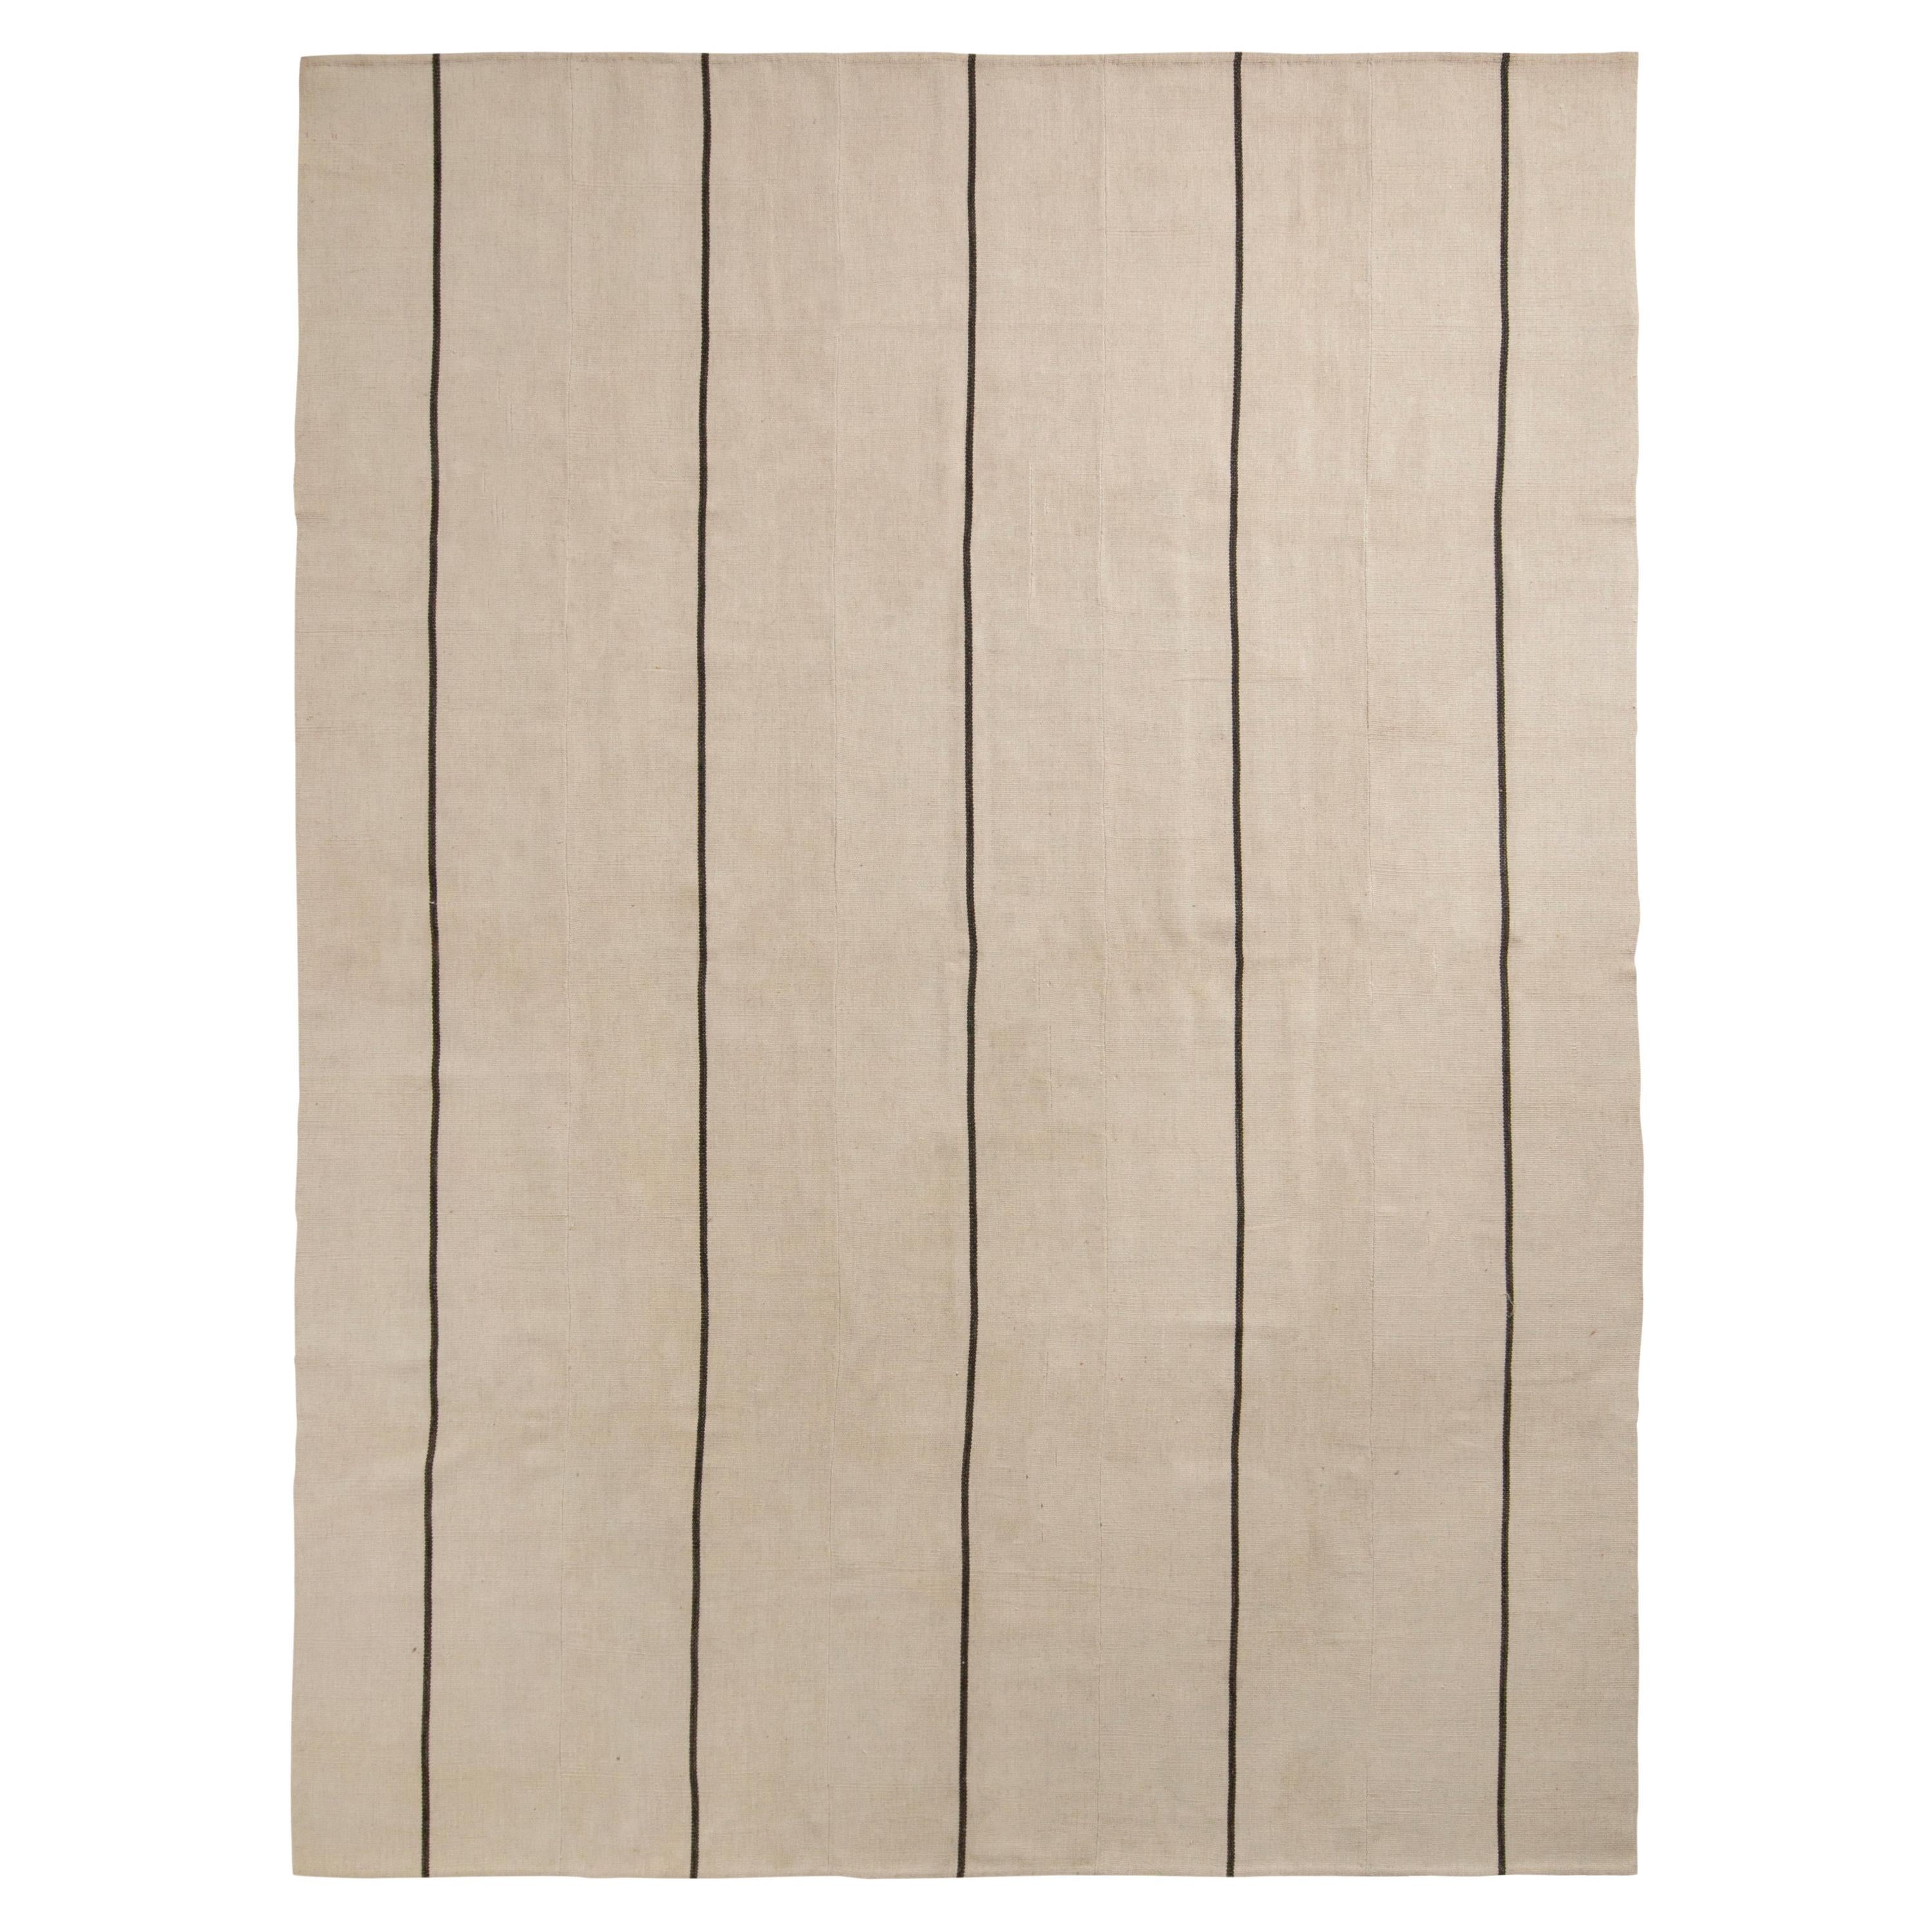 Rug & Kilim’s Modern Kilim Rug in Beige-Brown Stripe Pattern